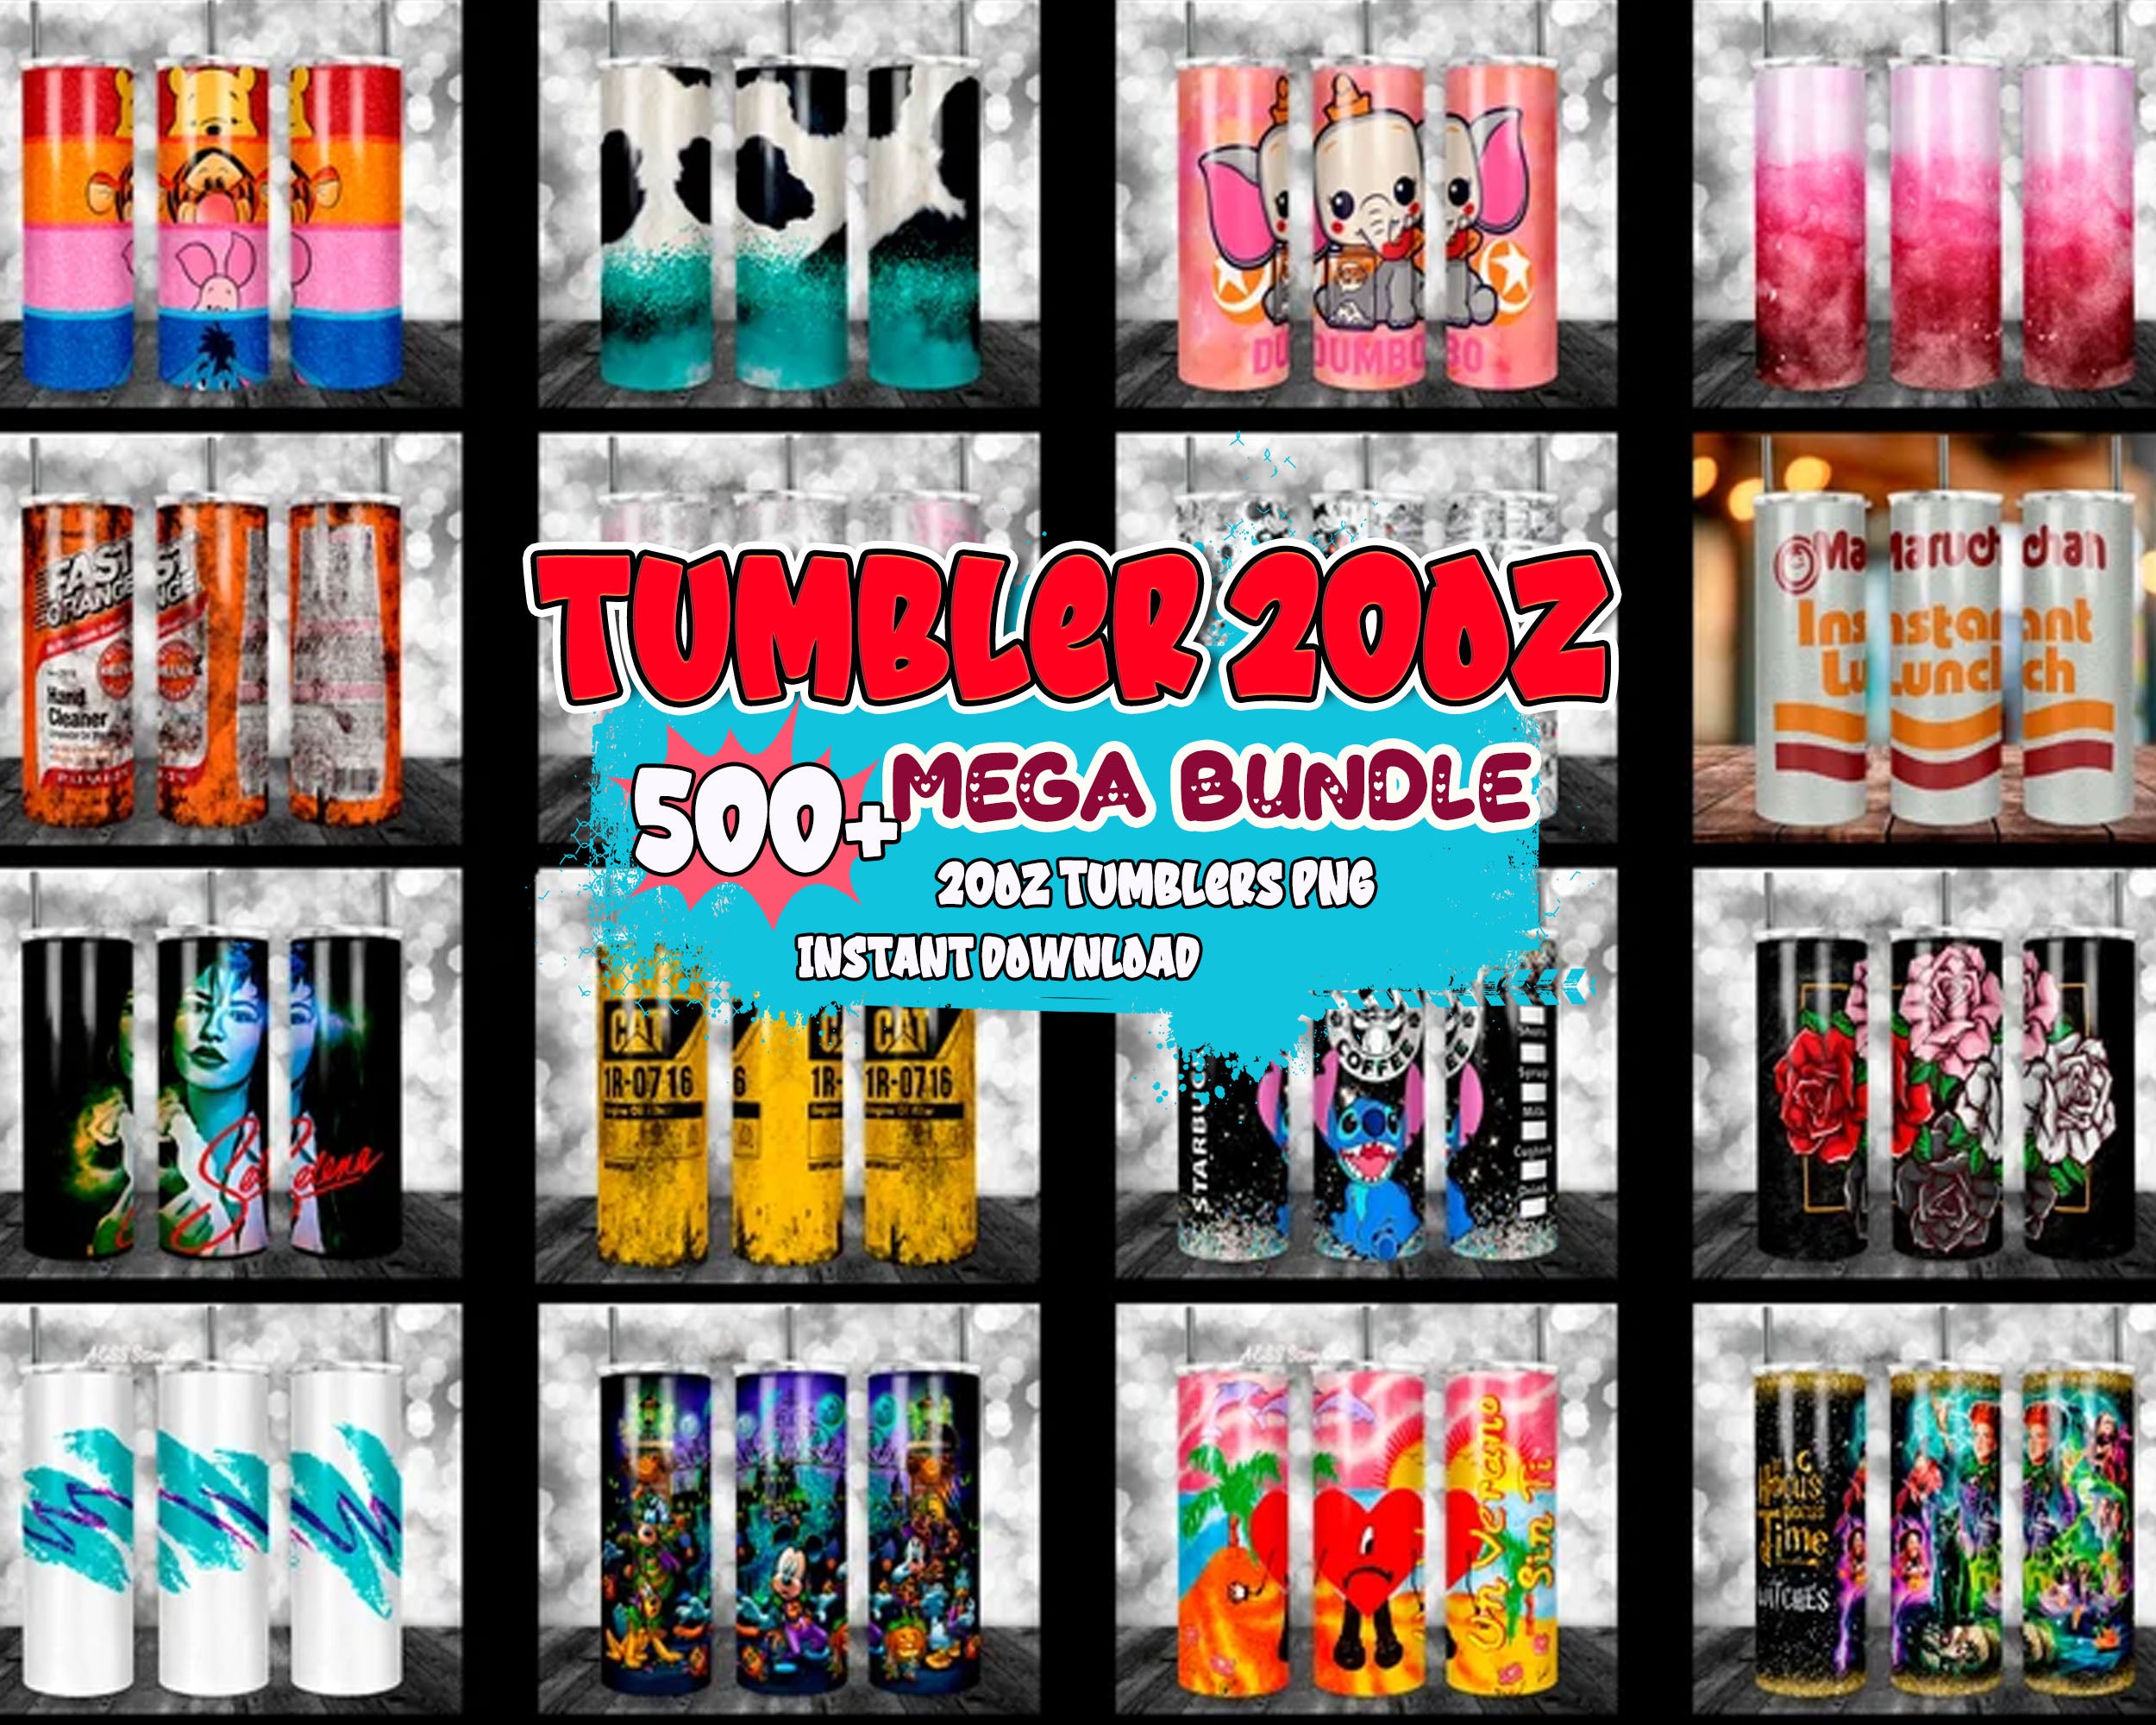 500+ Sublimation Bundle, For 20oz Tumblers, Sublimation Wrap, Instant download